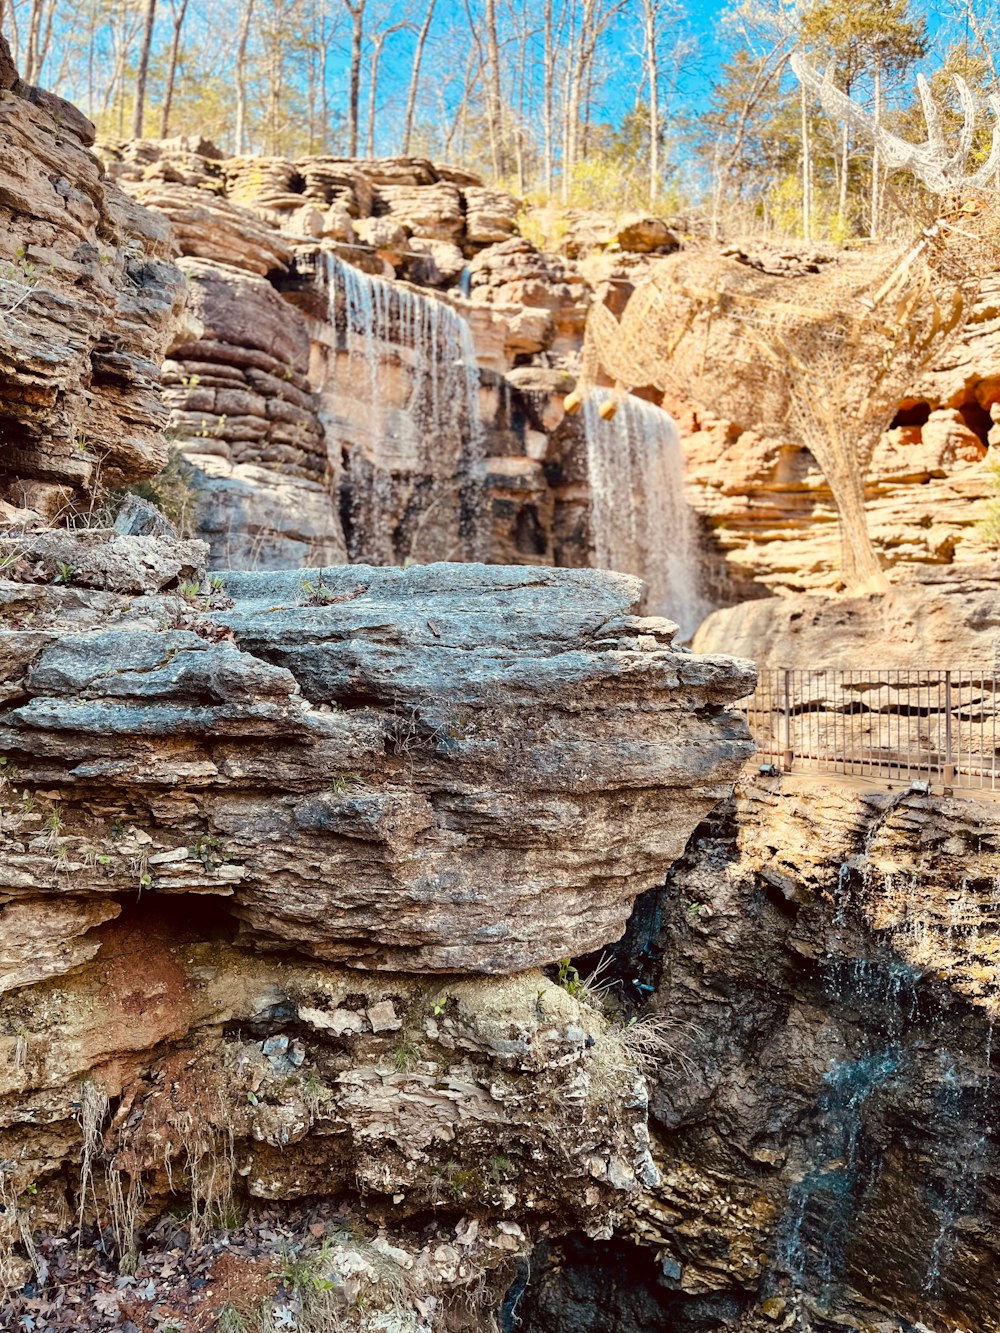 Una cascada en medio de una zona rocosa